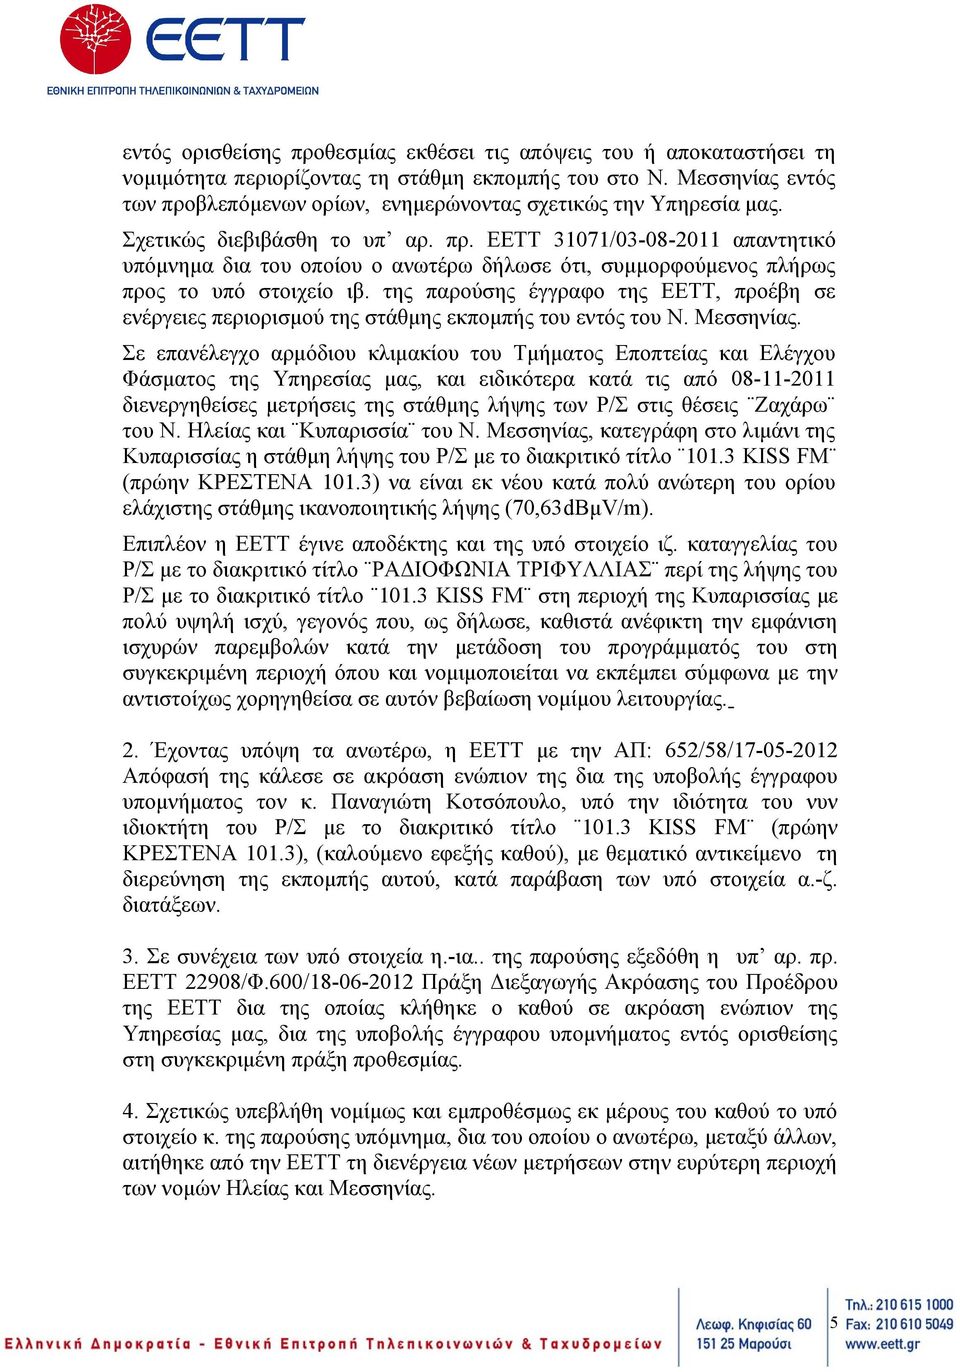 της παρούσης έγγραφο της ΕΕΤΤ, προέβη σε ενέργειες περιορισμού της στάθμης εκπομπής του εντός του Ν. Μεσσηνίας.